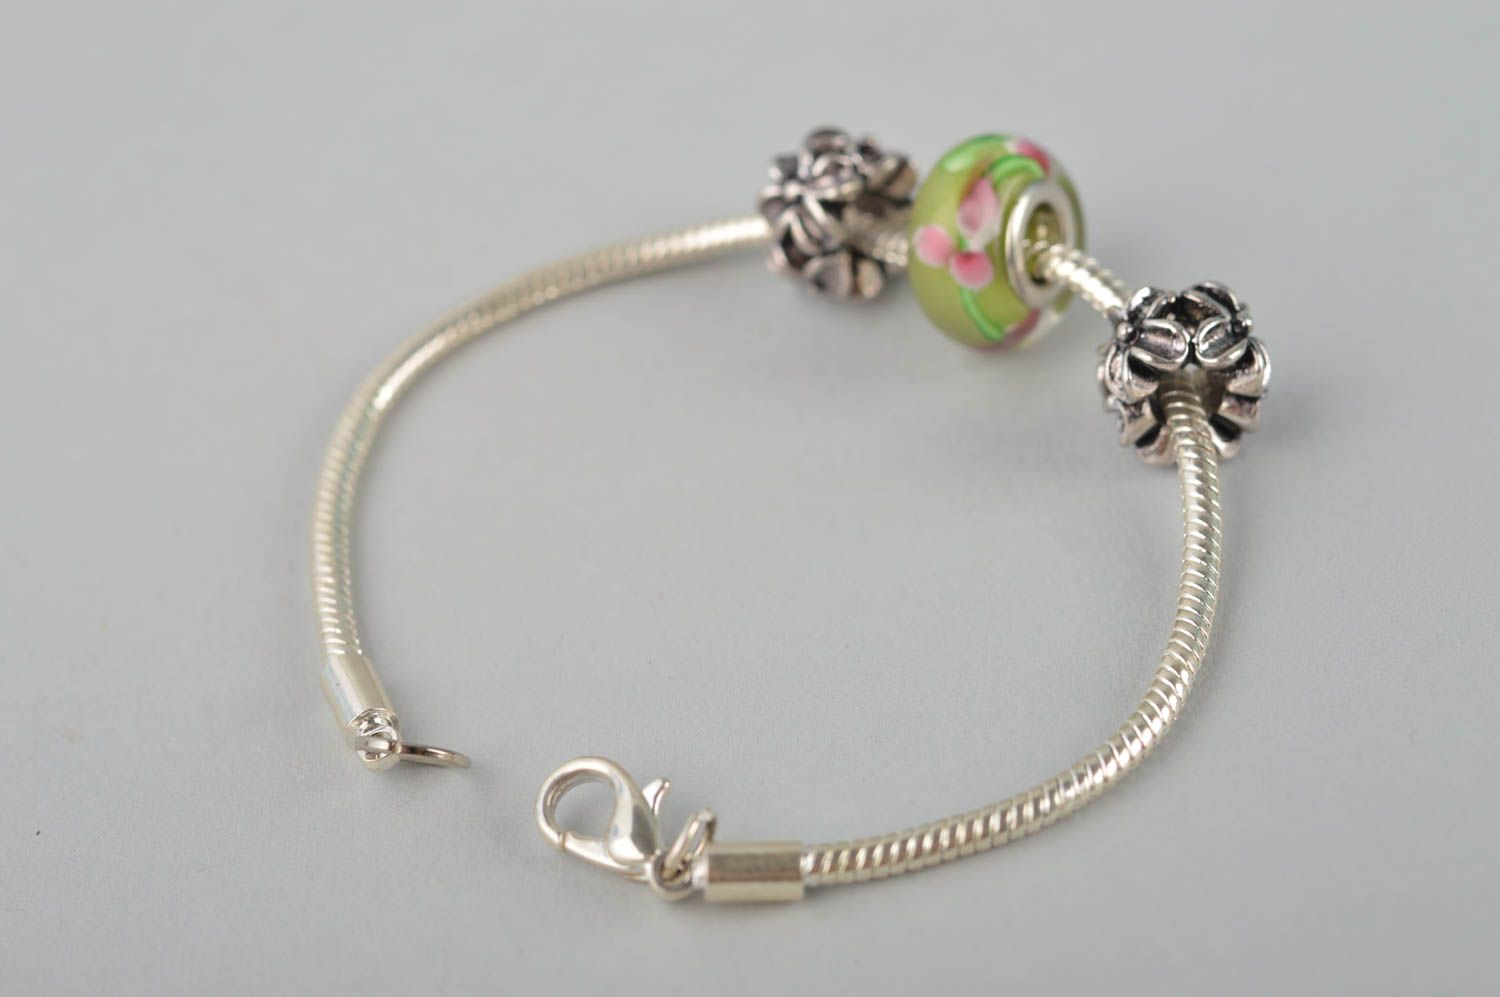 Metal wrist bracelet beaded stylish bracelet gift for her stylish jewelry photo 3